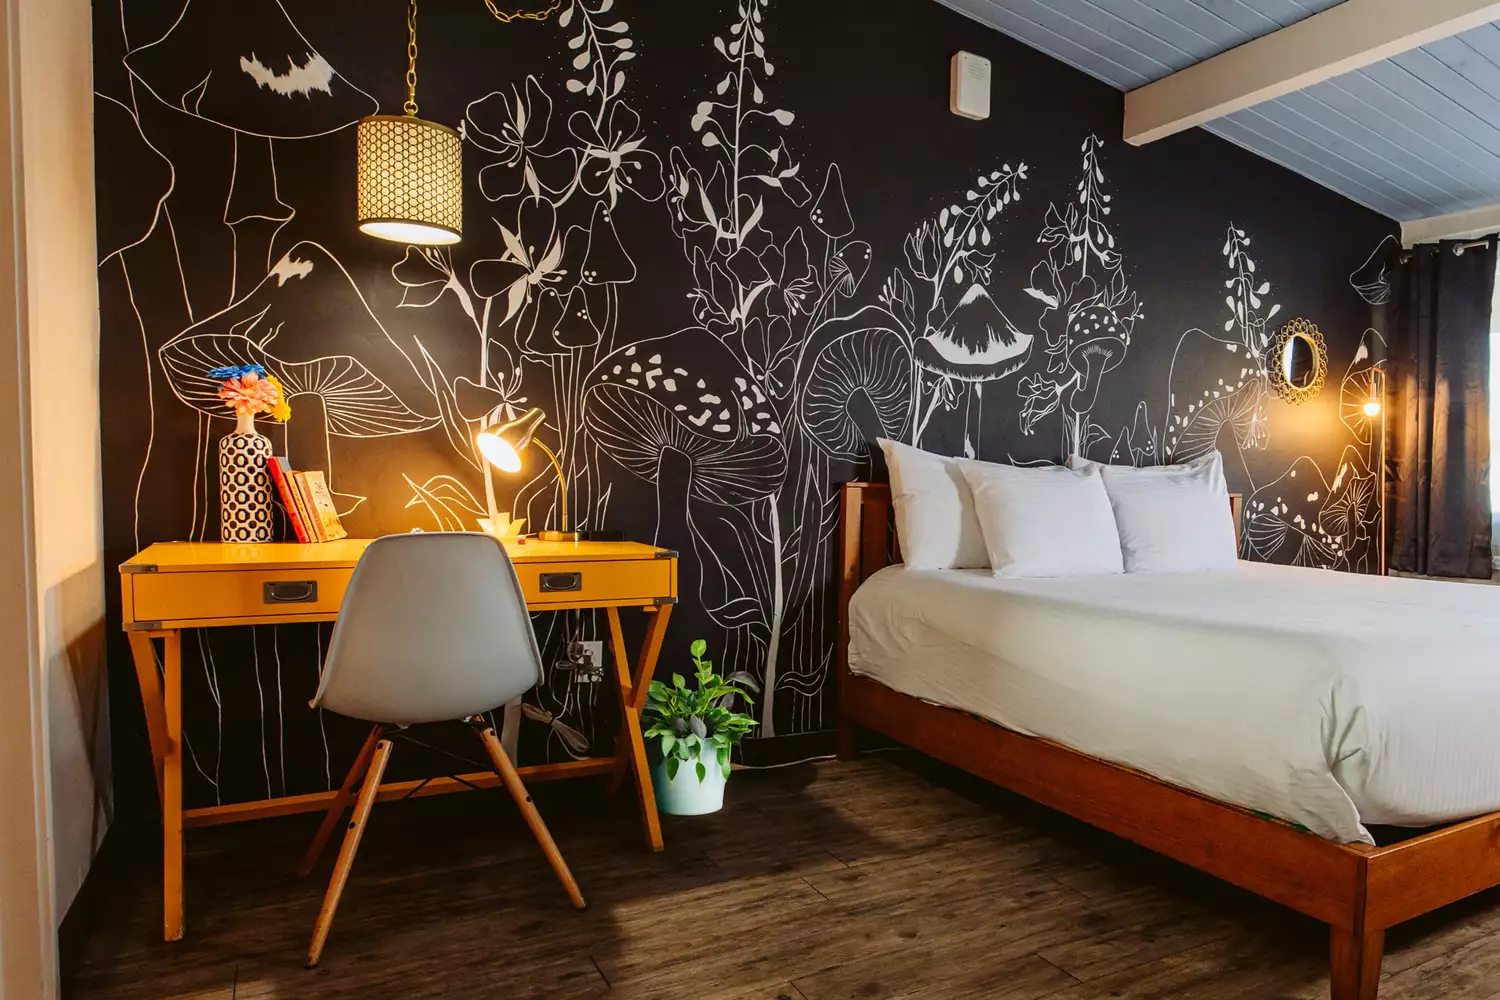 Phòng khách tại khách sạn McCoy với giấy dán tường in hình cây nấm